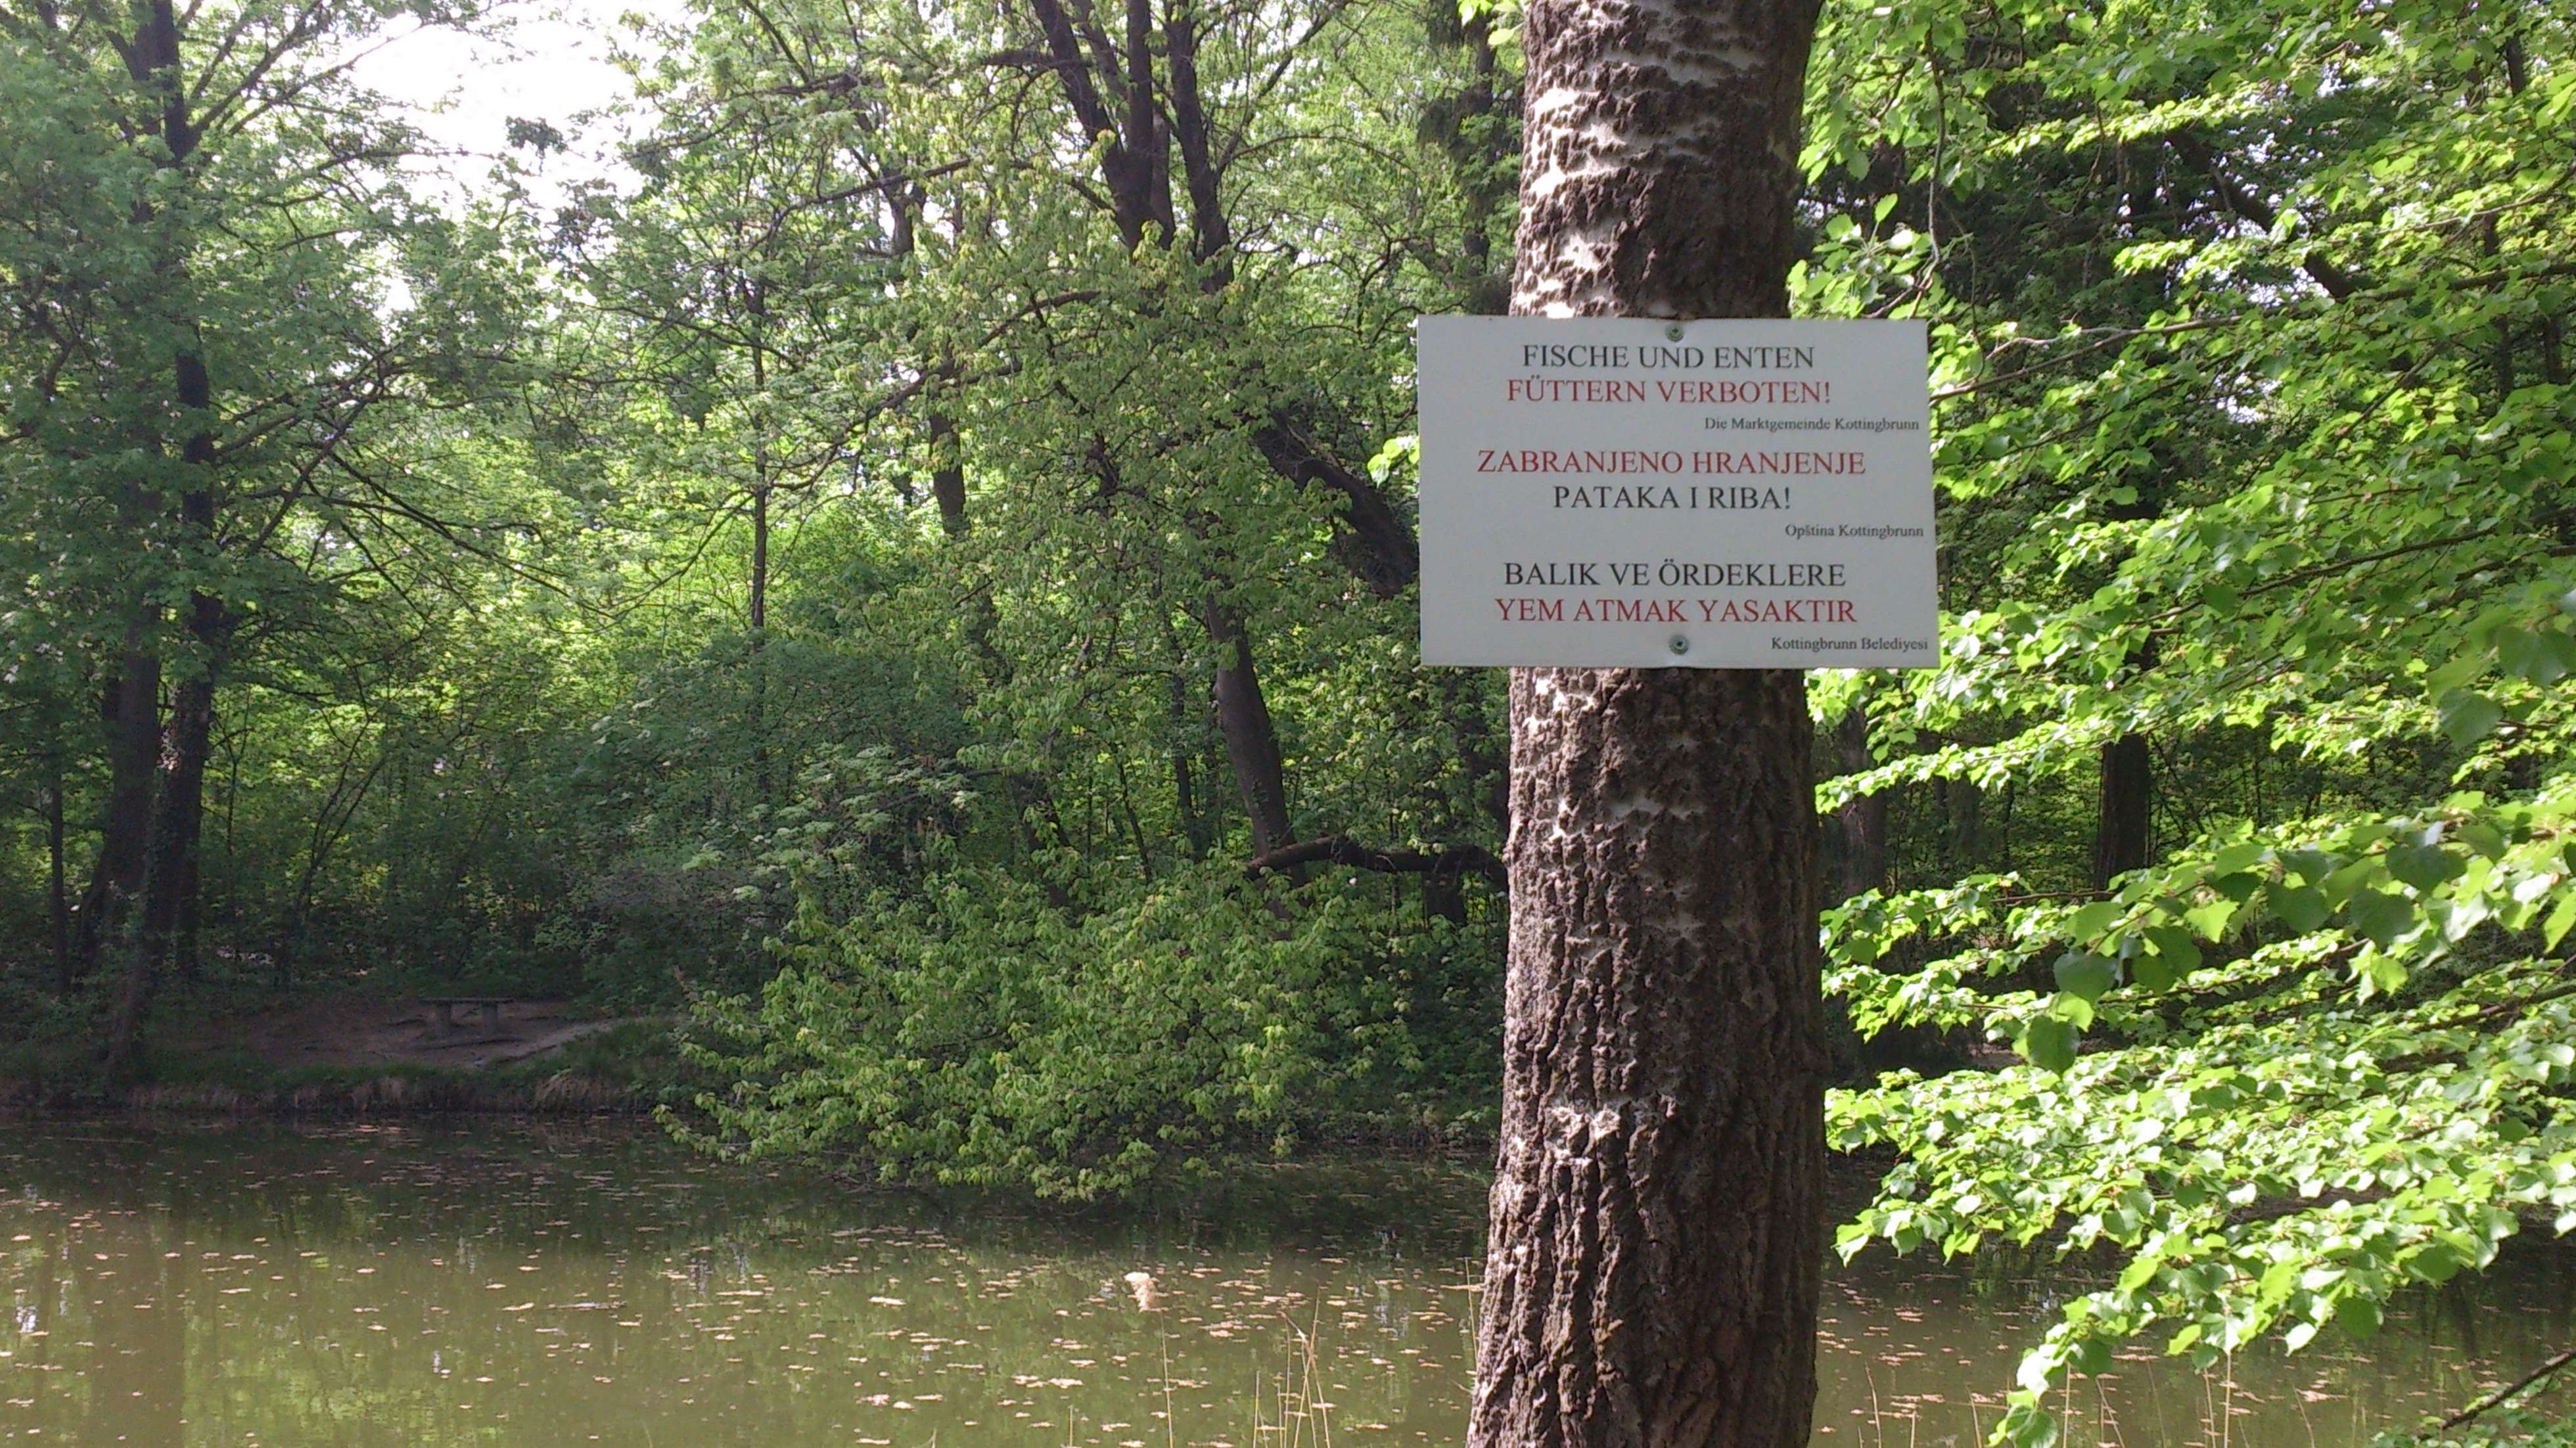 Opština Kottingbrunn - zabranjeno hranjenje pataka i riba